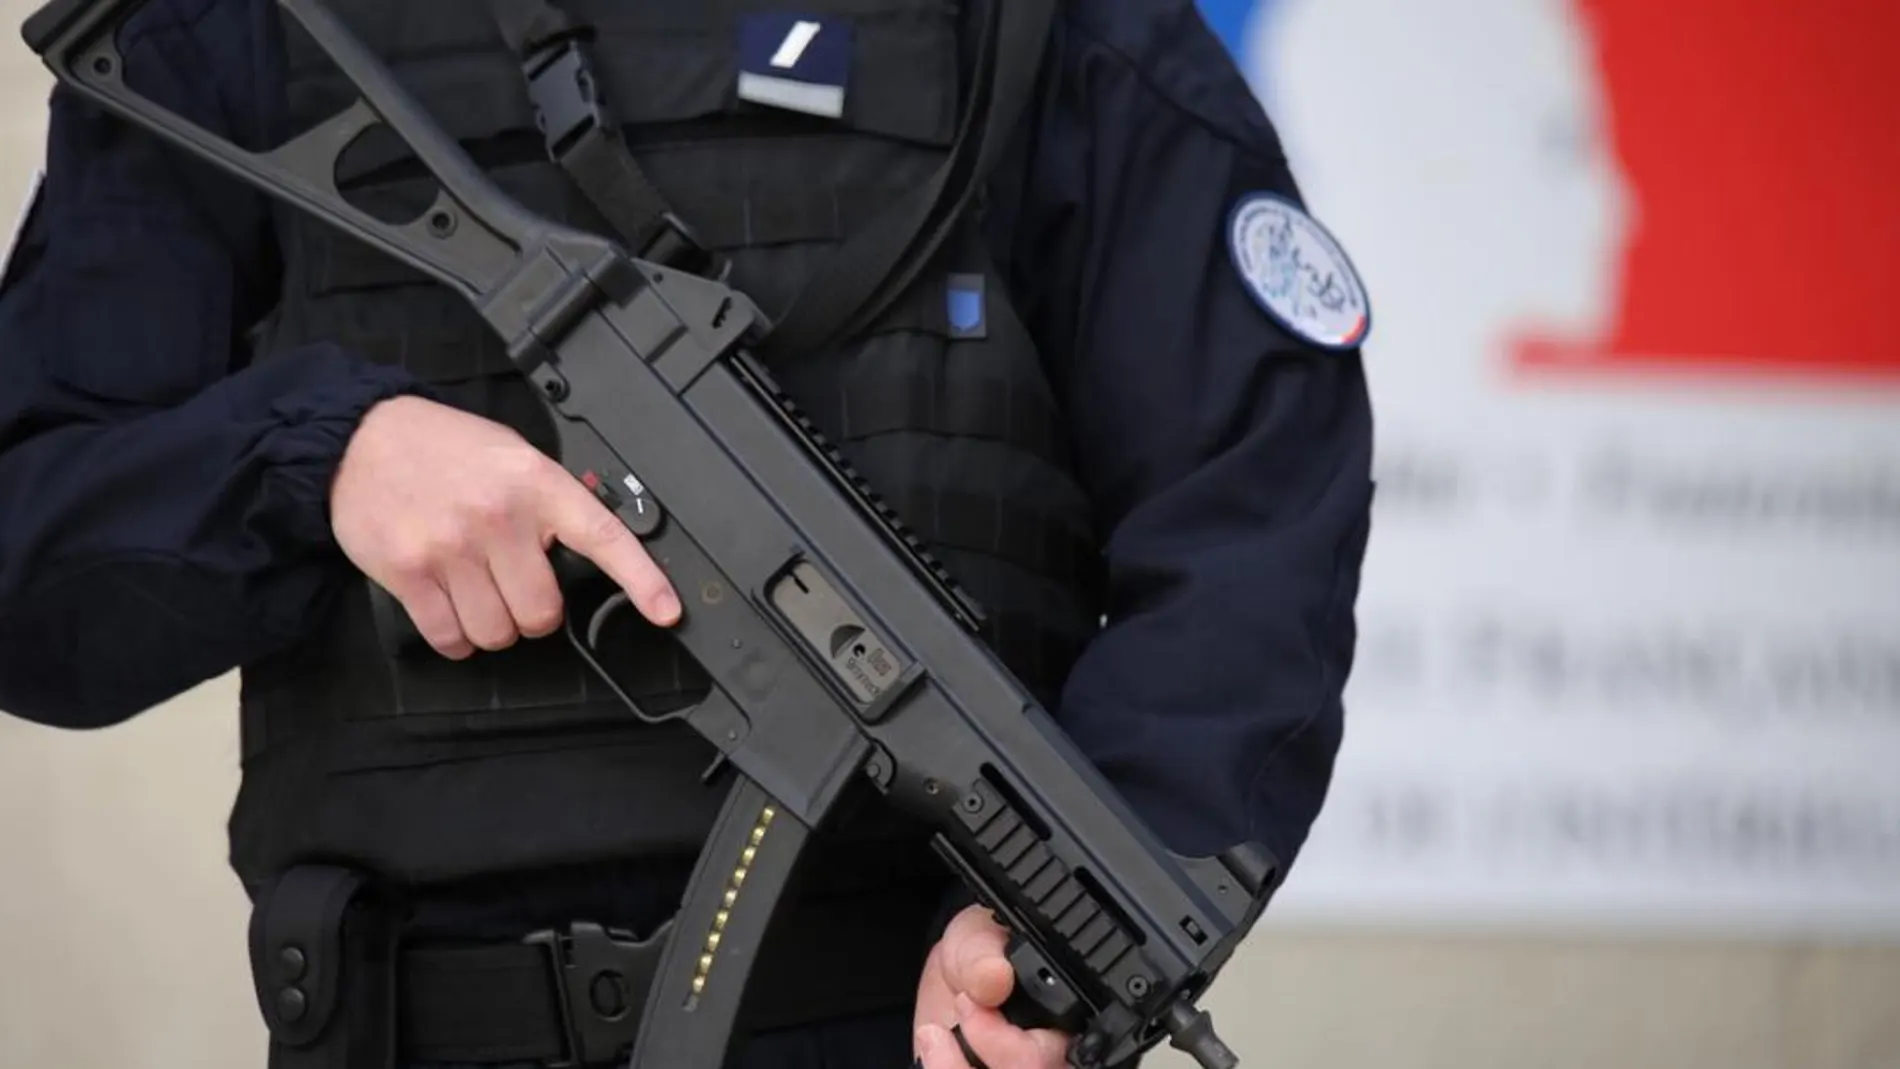 La Policía francesa desarticula un posible atentado con ricina